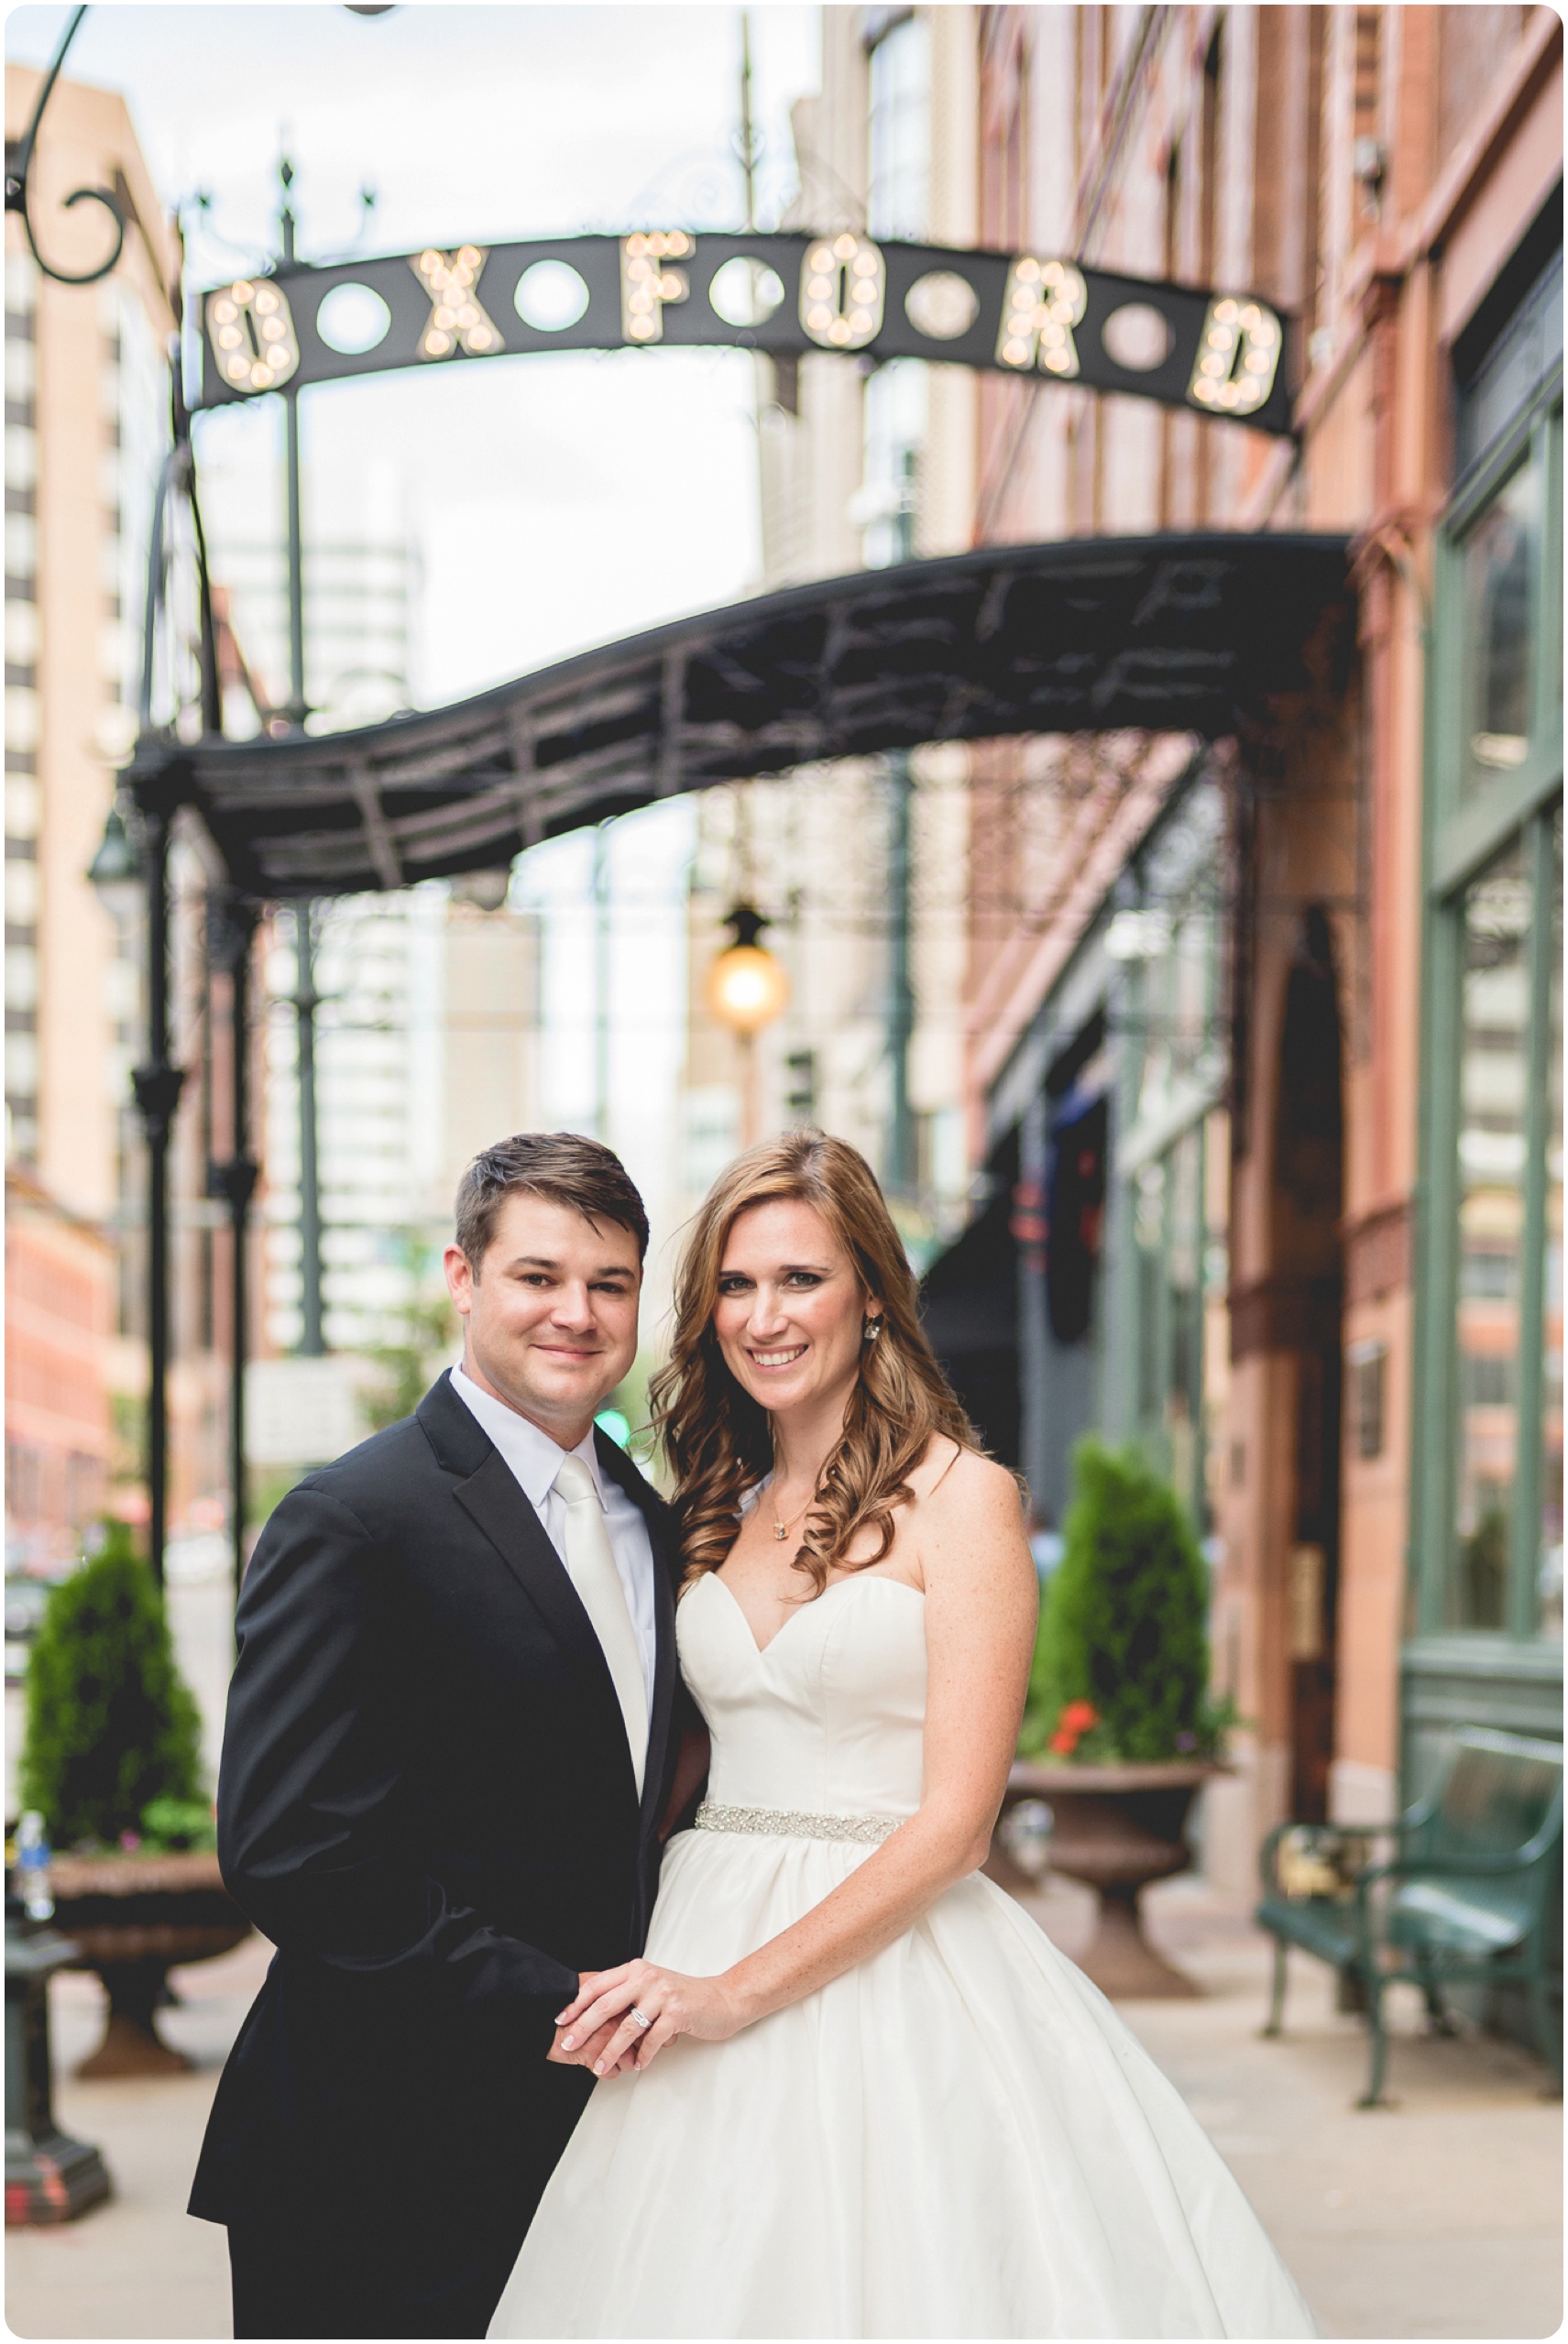 Katie & Drew | Oxford Hotel – Denver Wedding Photographer